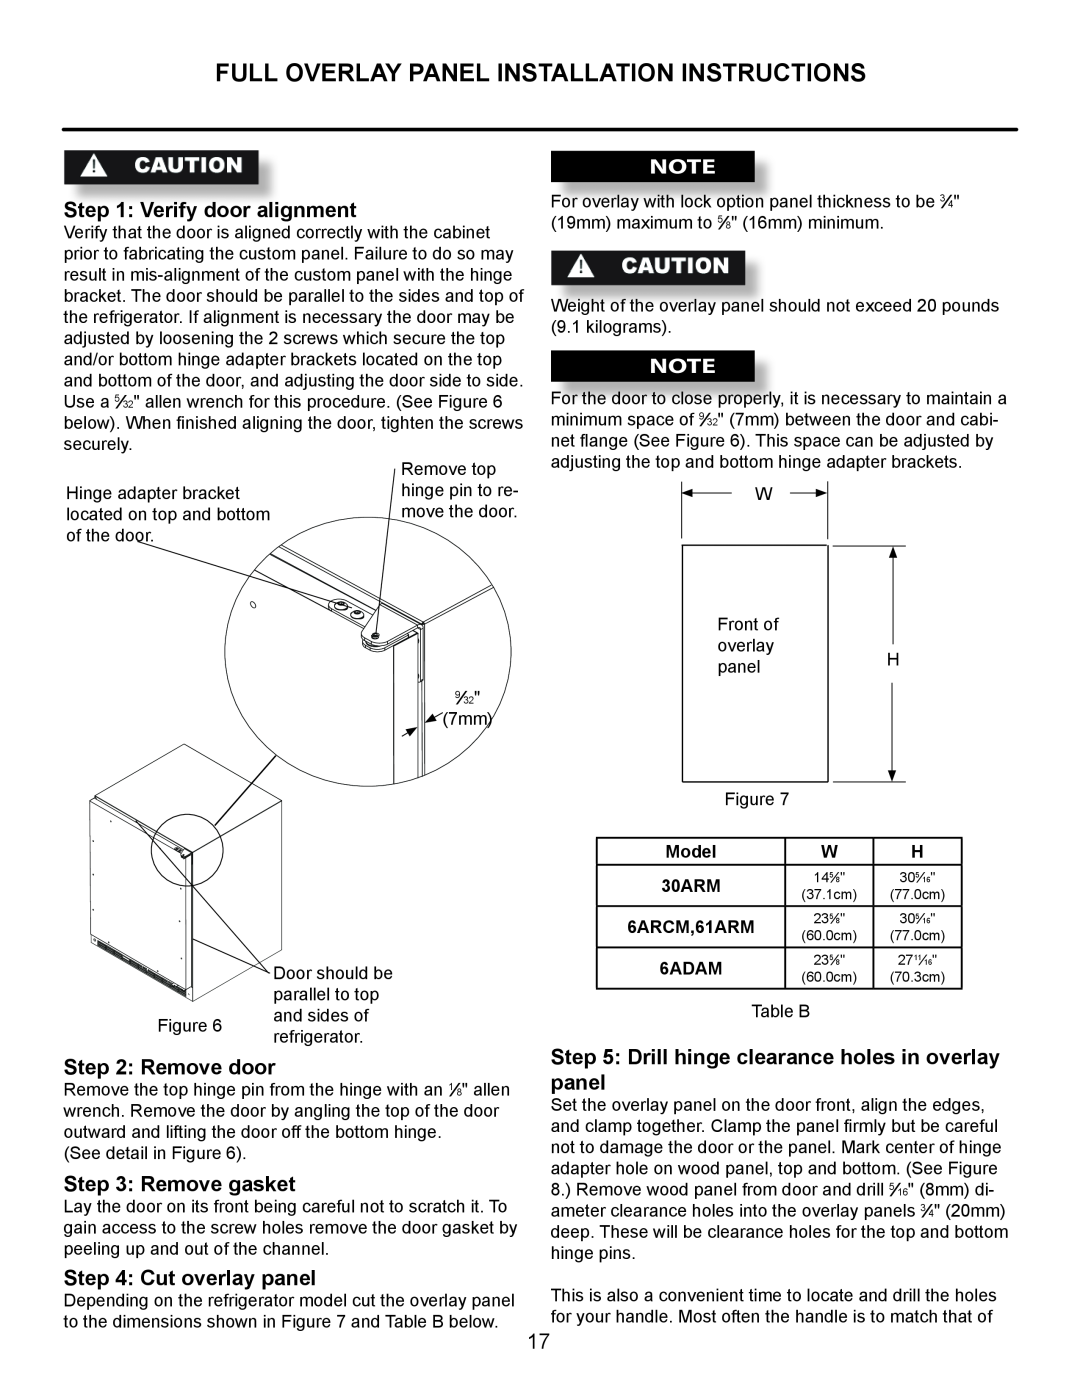 Marvel Industries 61ARMBBOL manual Full Overlay Panel Installation Instructions, Verify door alignment, Remove door 